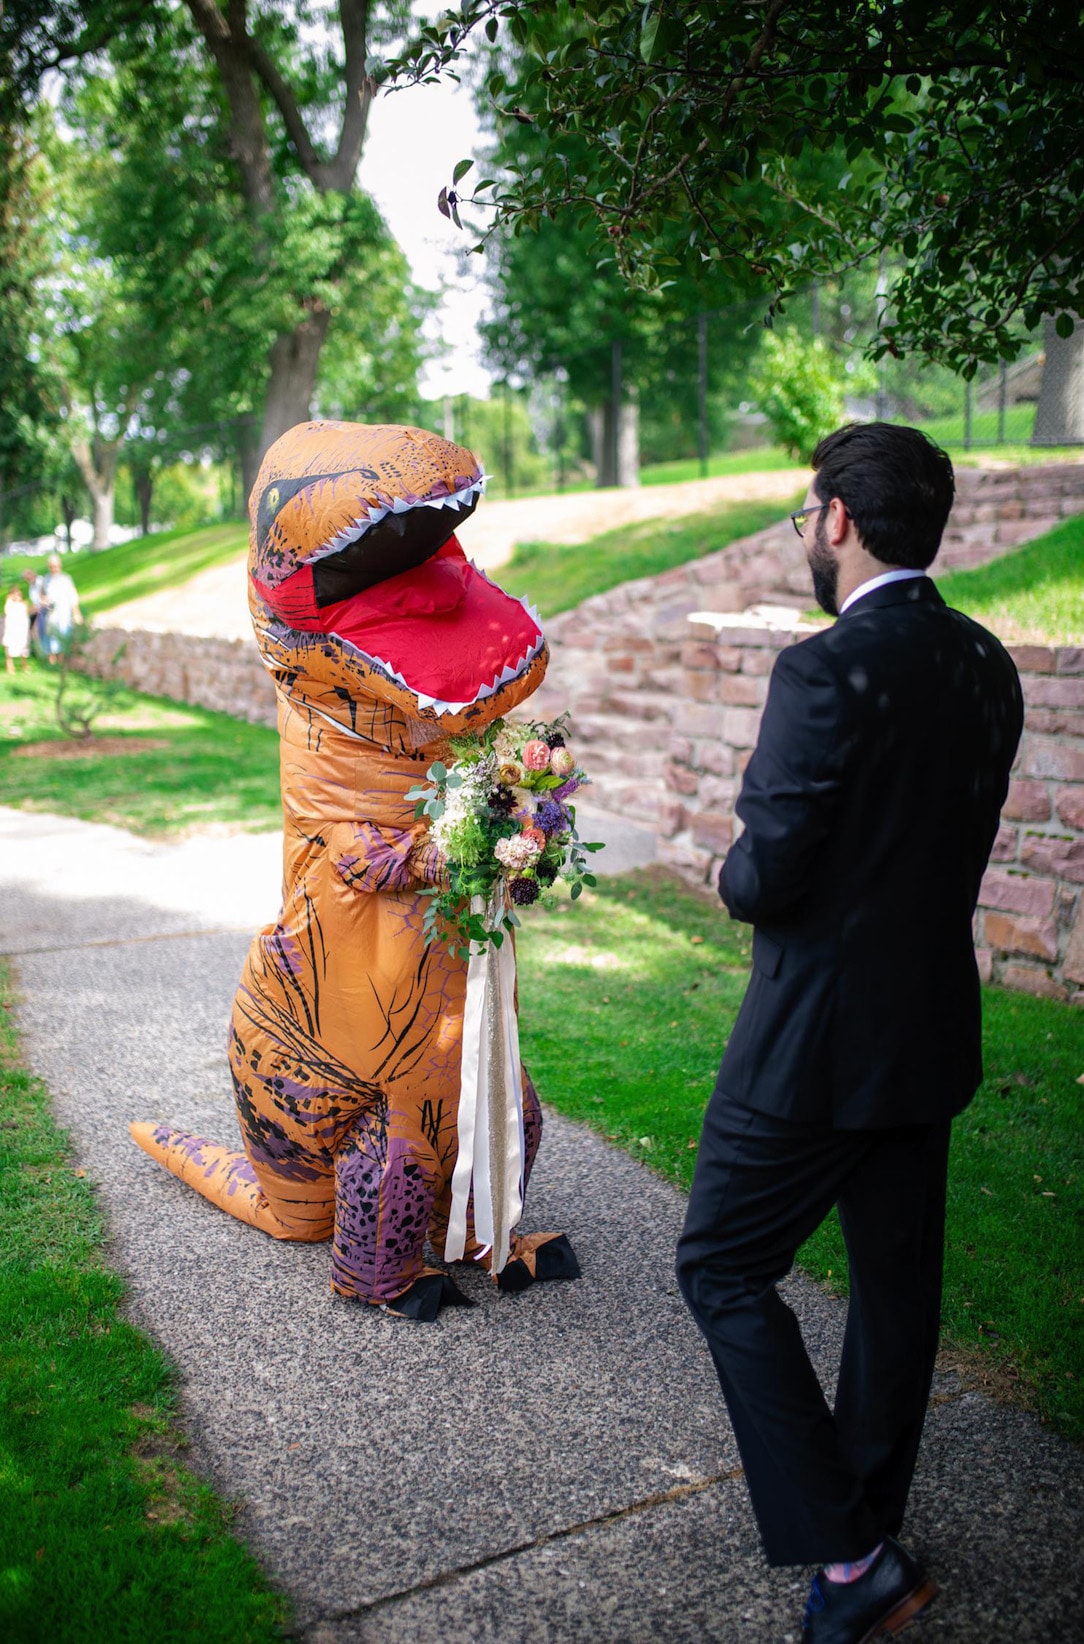 Полезное: Невеста надела на свадьбу гигантский костюм Тираннозавра Рекса вместо шикарного платья